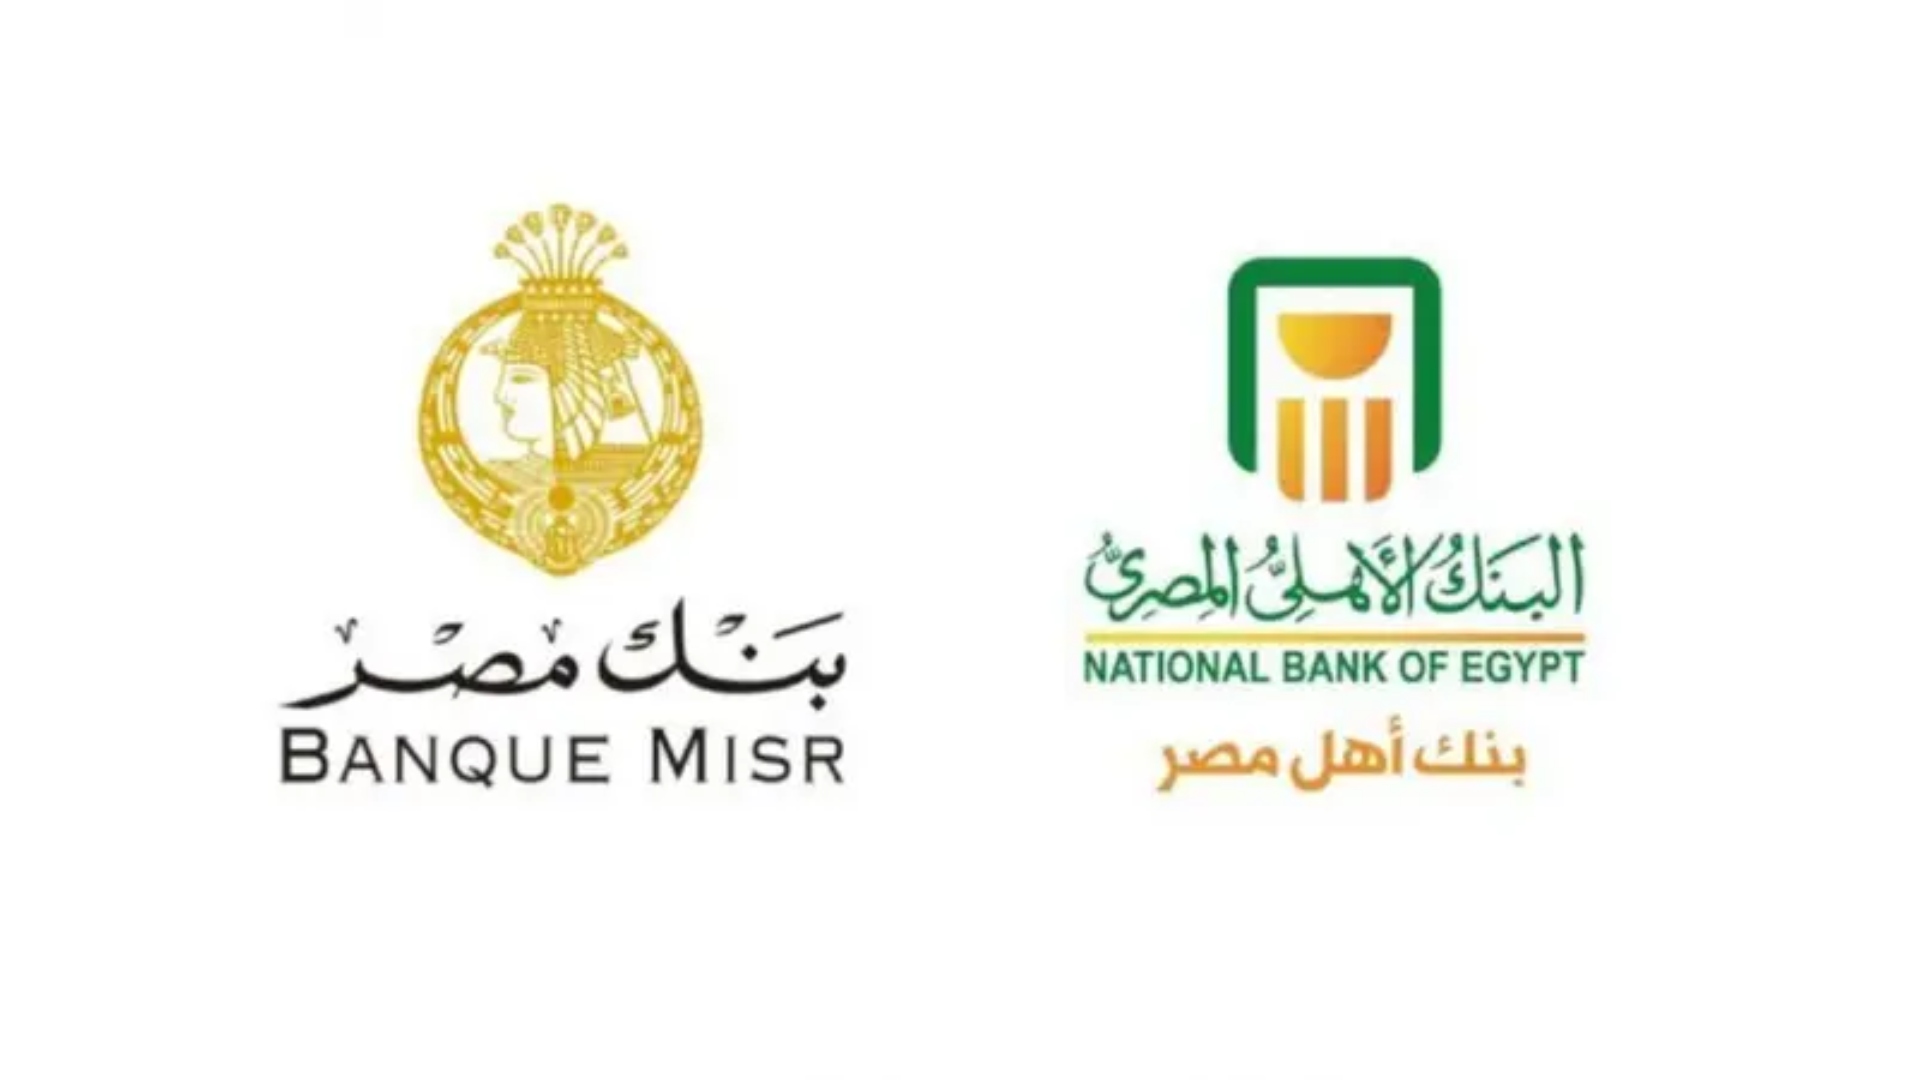 البنك الأهلي المصري وبنك مصر يصدران شهادات استثمار بعائد 17.25%